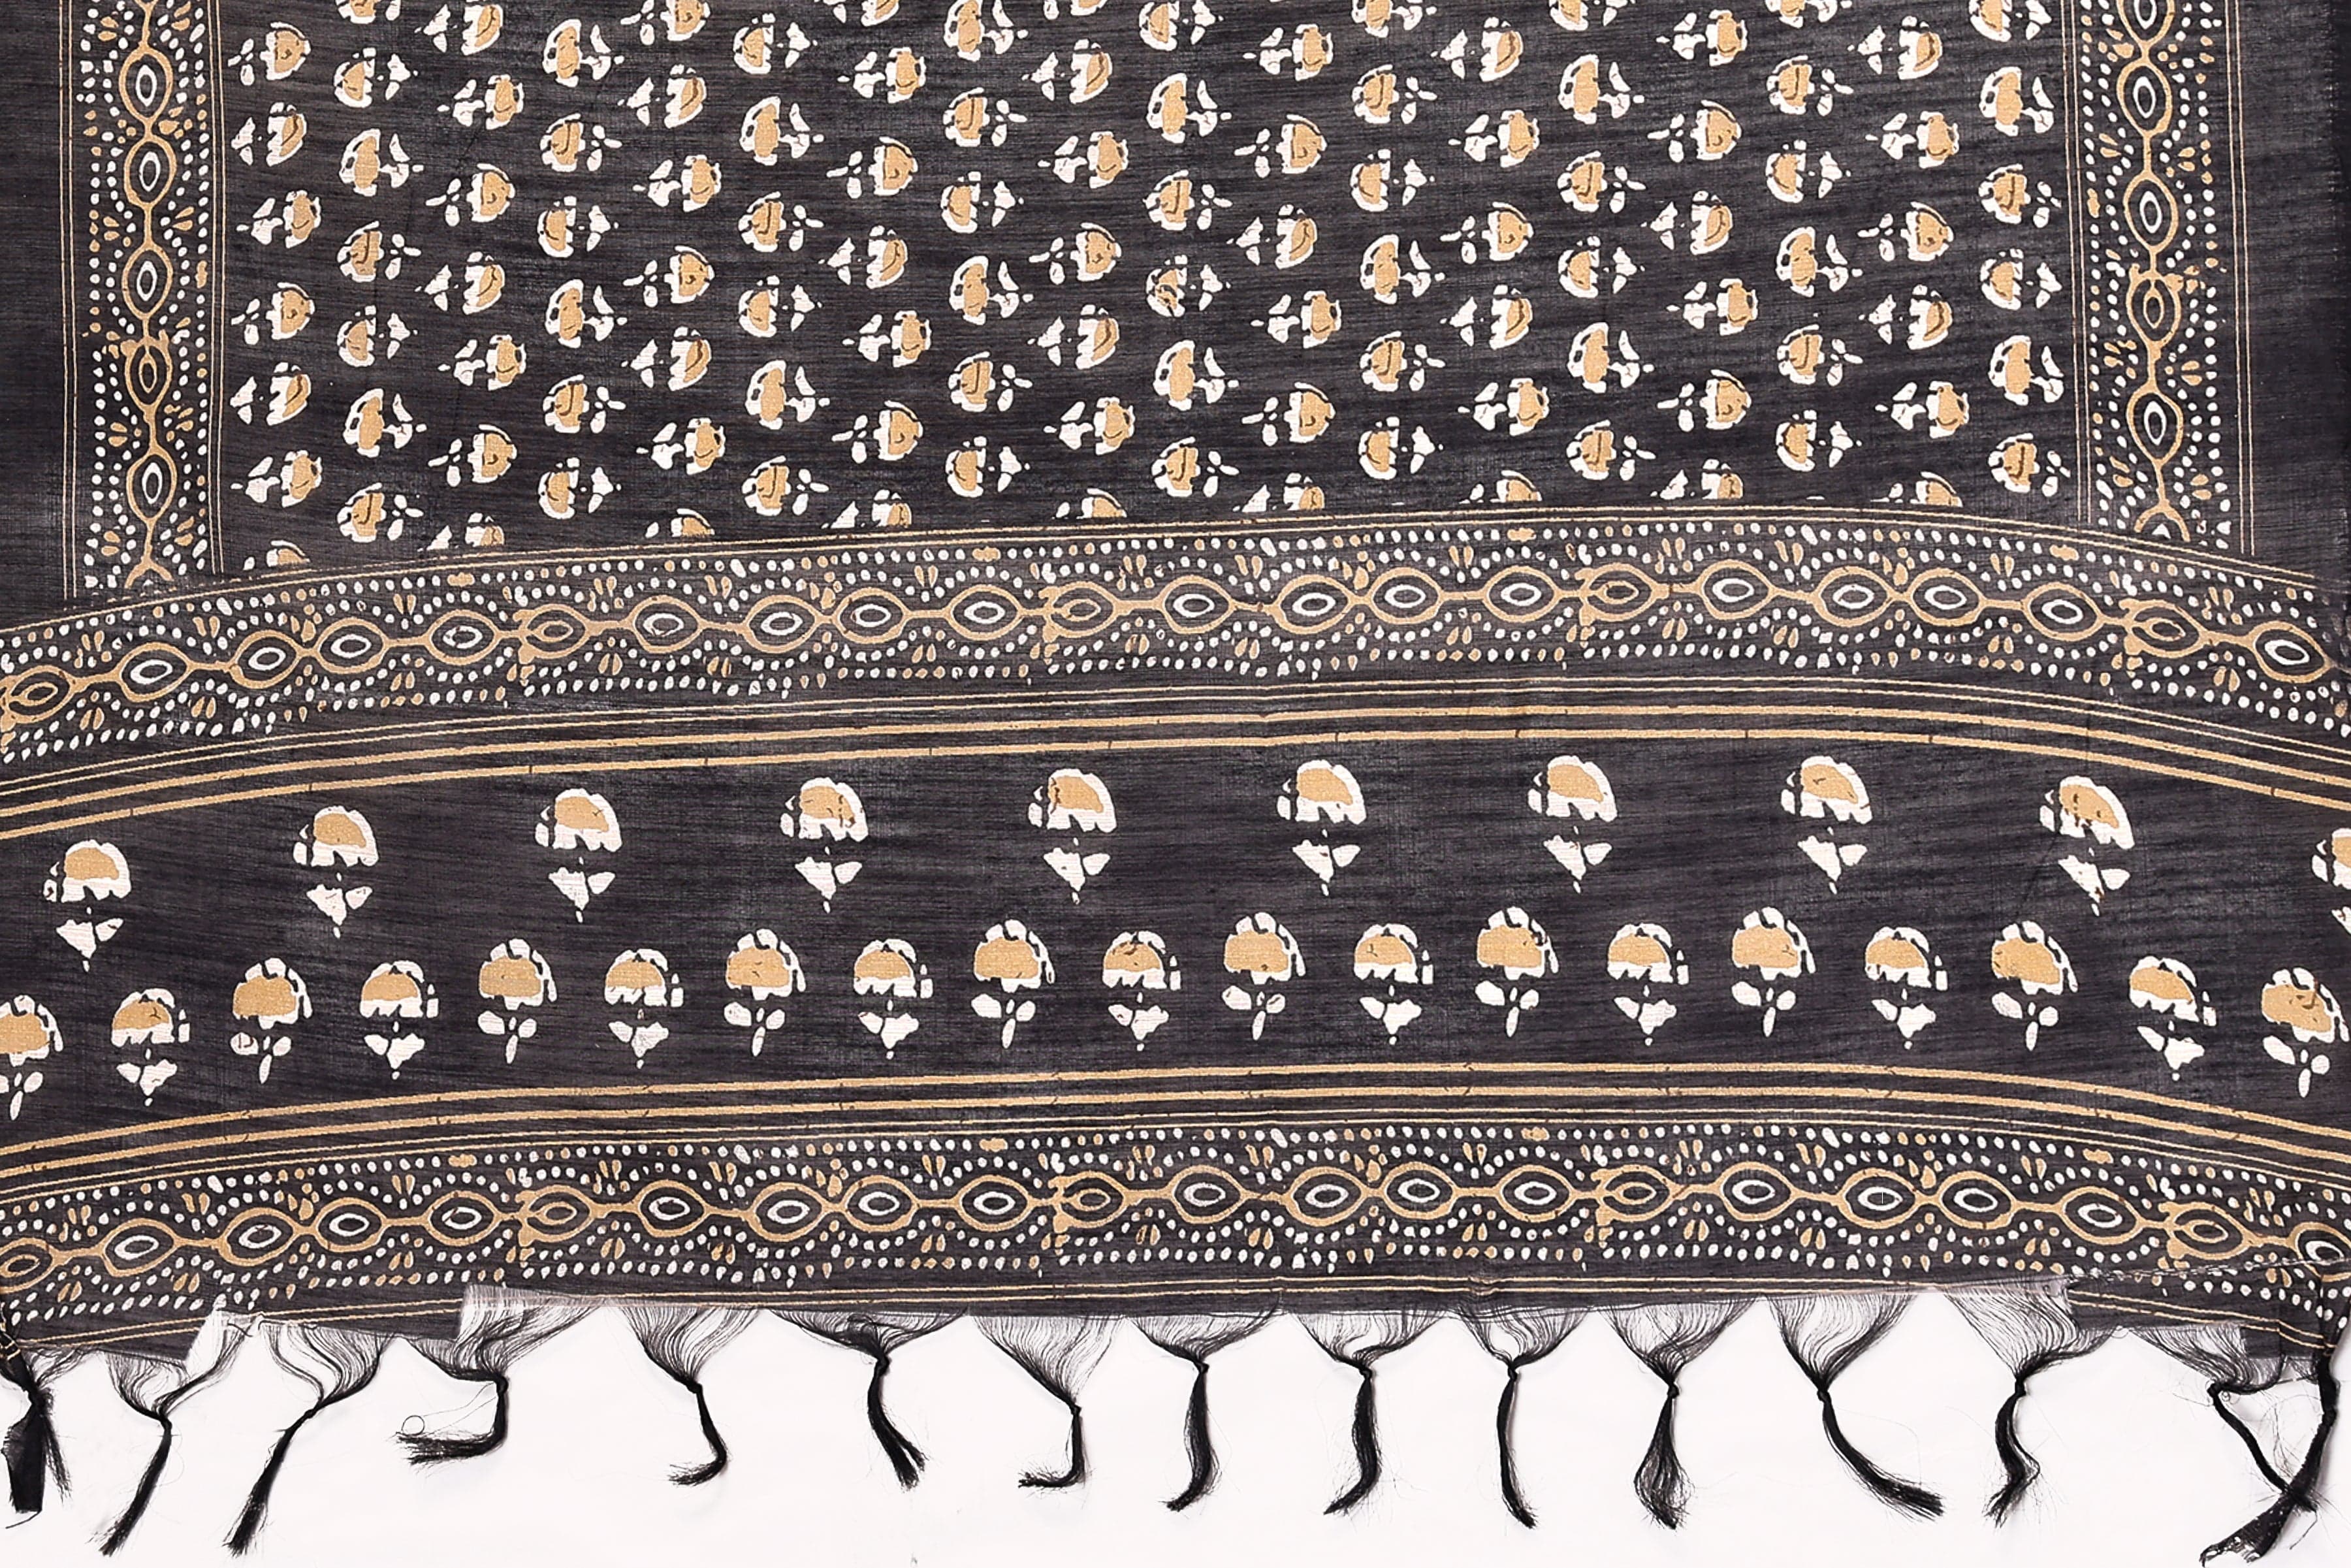 Varanga Black And Beige Printed Khadi Cotton Dupatta With Tasselled Border